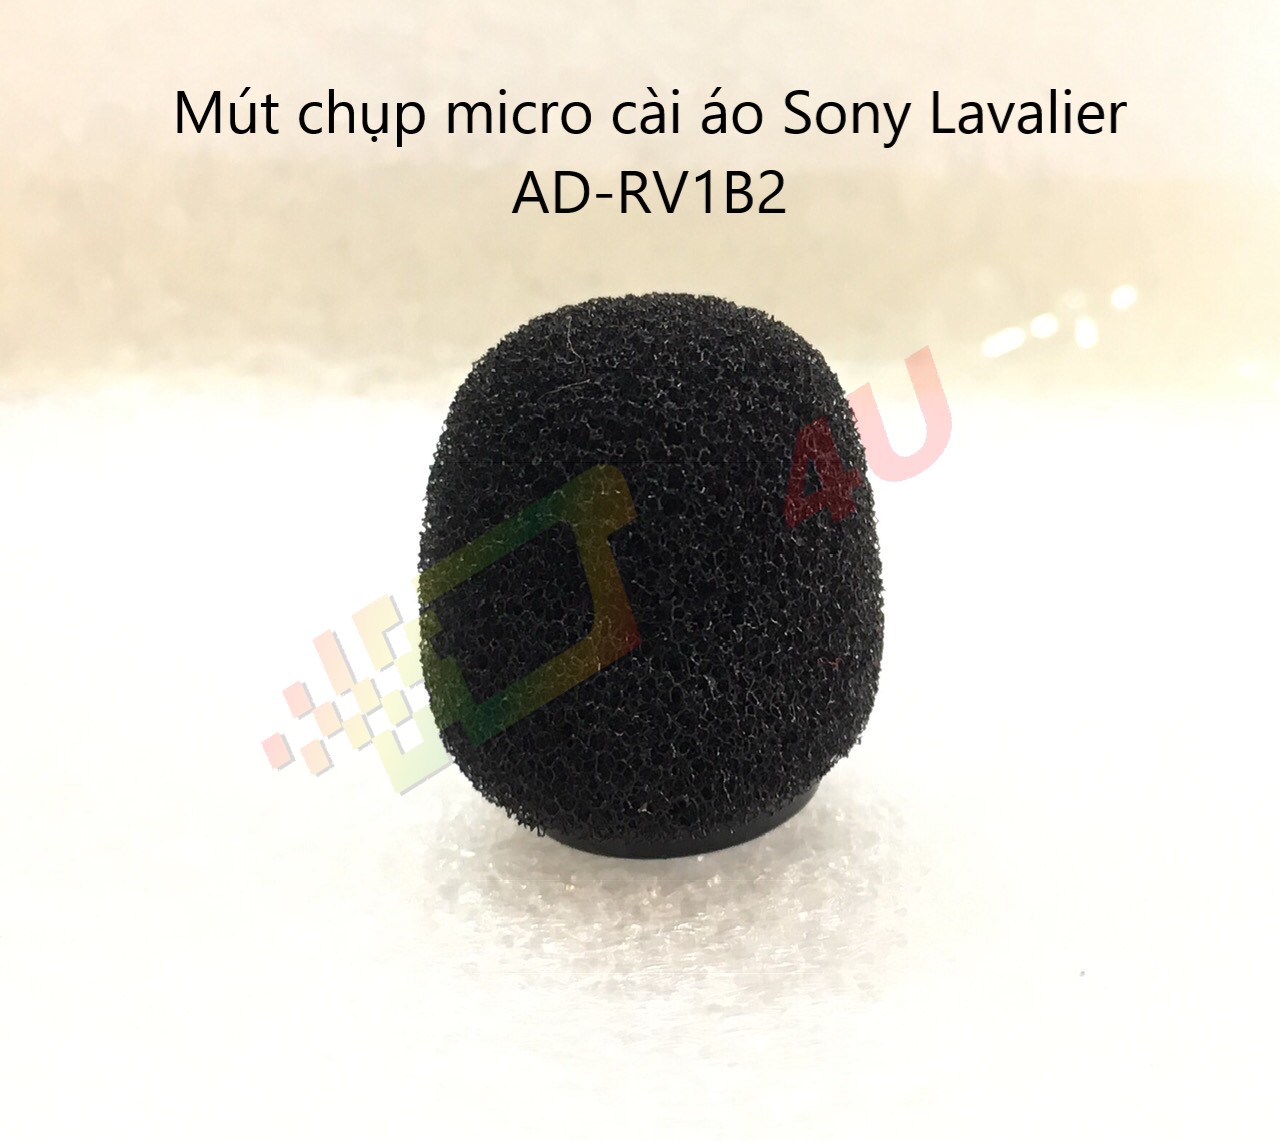 Mút chụp micro cài áo Sony Lavalier AD-RV1B2 ( sử dụng Dòng UWP bao gồm UWP-D21, UWP-D16, UTX-B03 và ECM-V1BMP. )